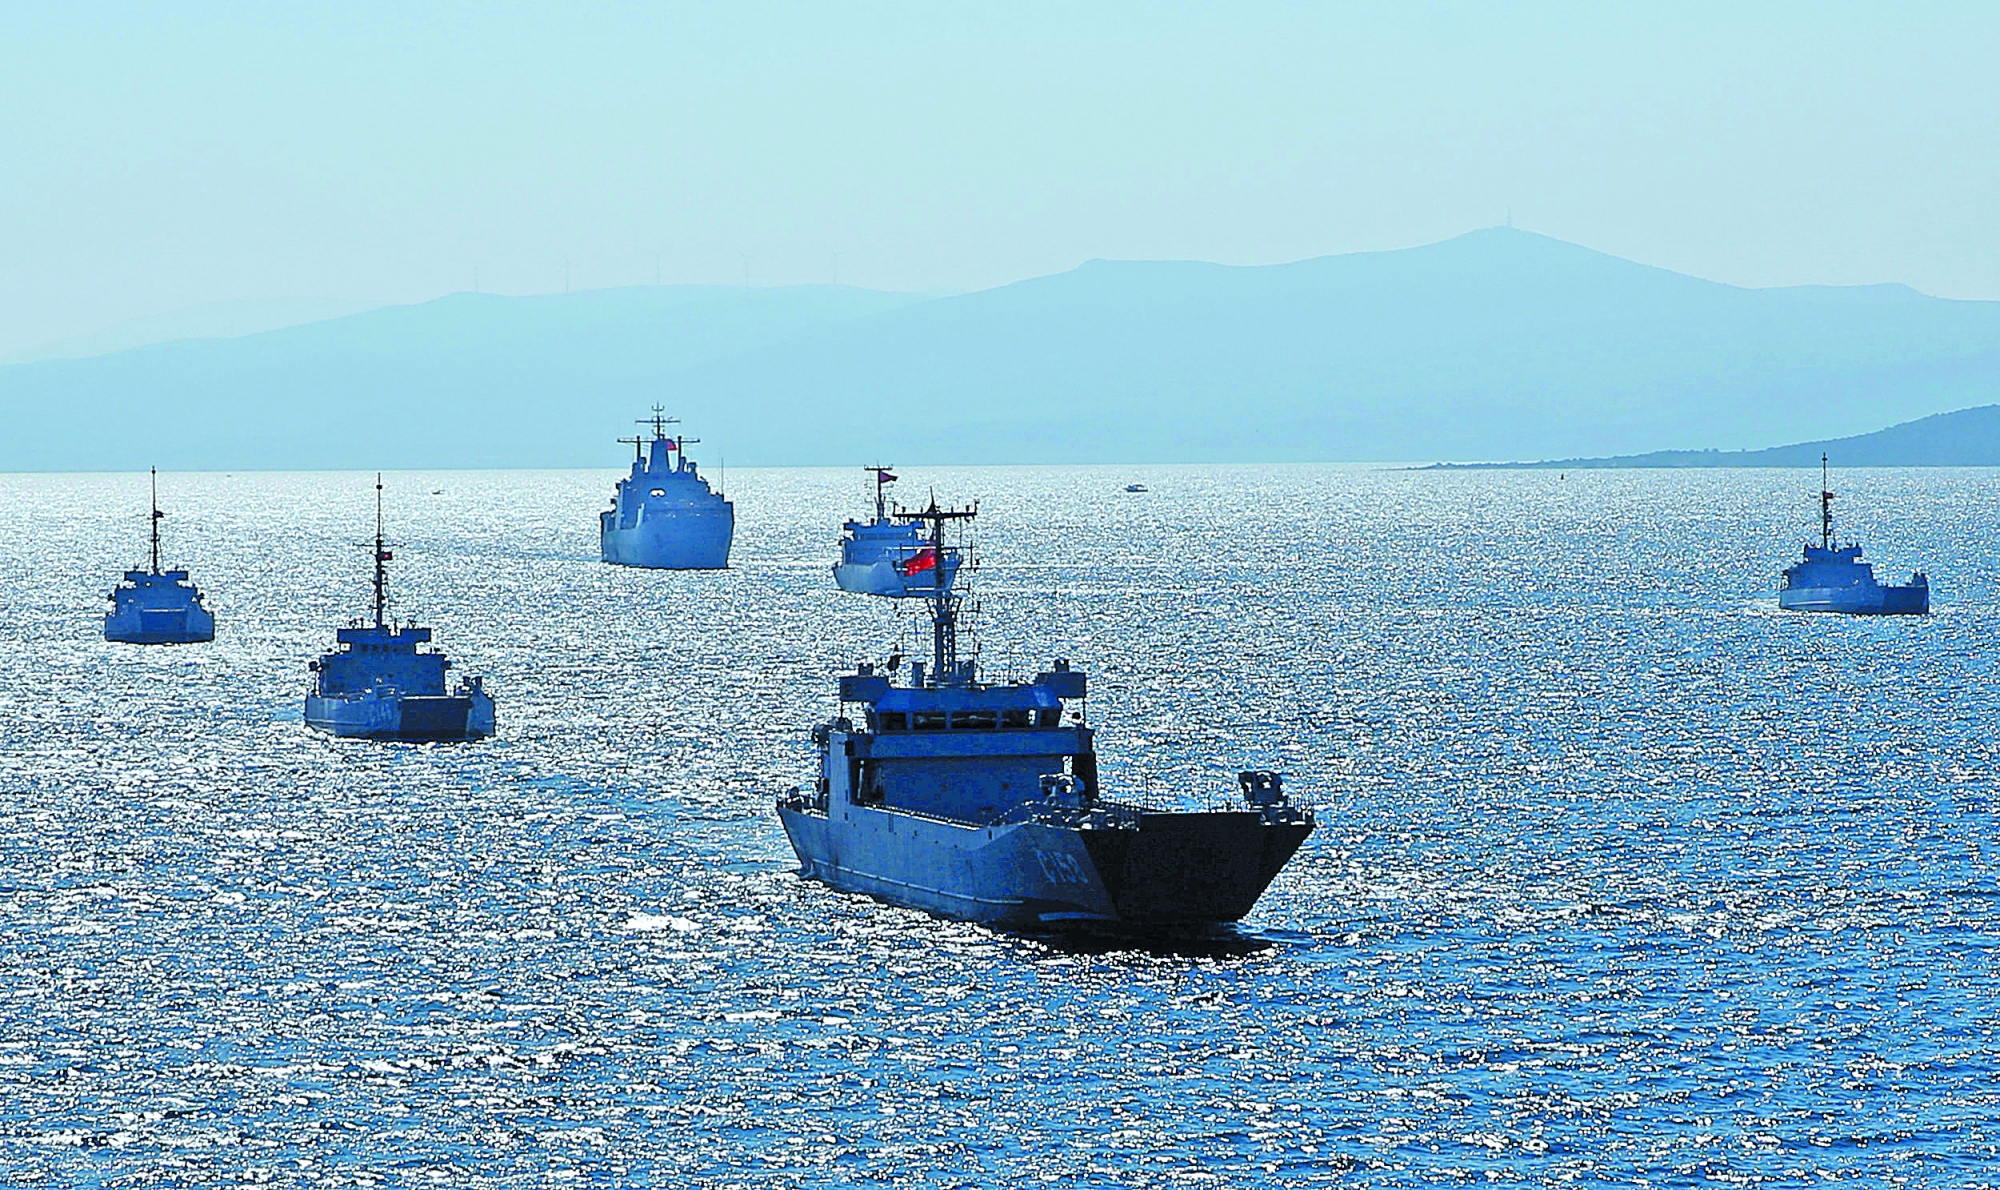 Επιμένει το CHP: Γαλάζια πατρίδα για εμάς σημαίνει να μην κάνουμε ούτε ένα βήμα πίσω σε Αιγαίο και Μεσόγειο